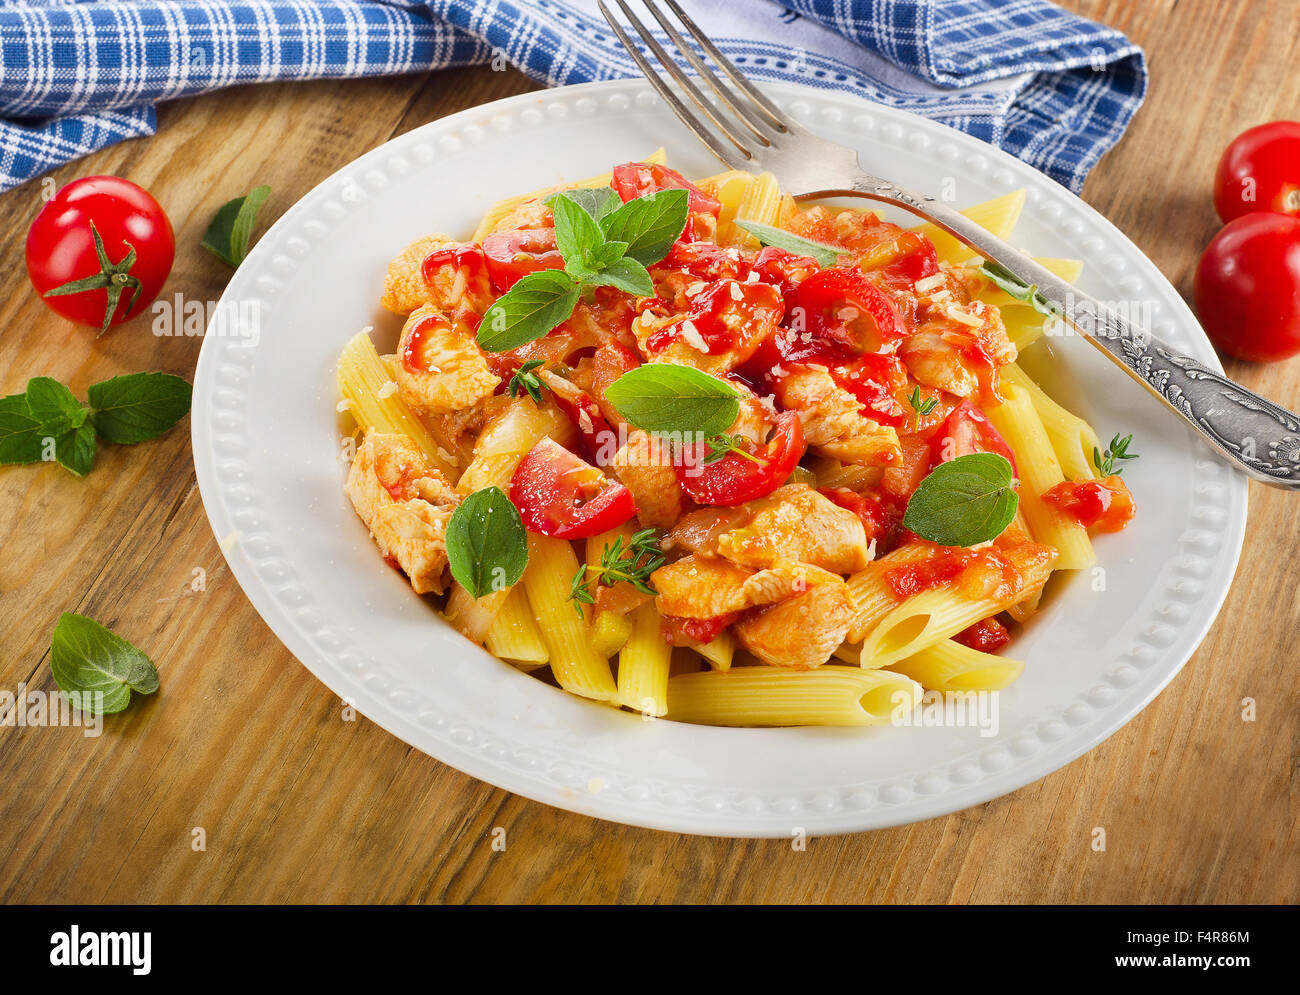 Pasta Penne mit Tomatensauce, Fleisch und Gemüse. Selektiven Fokus ...